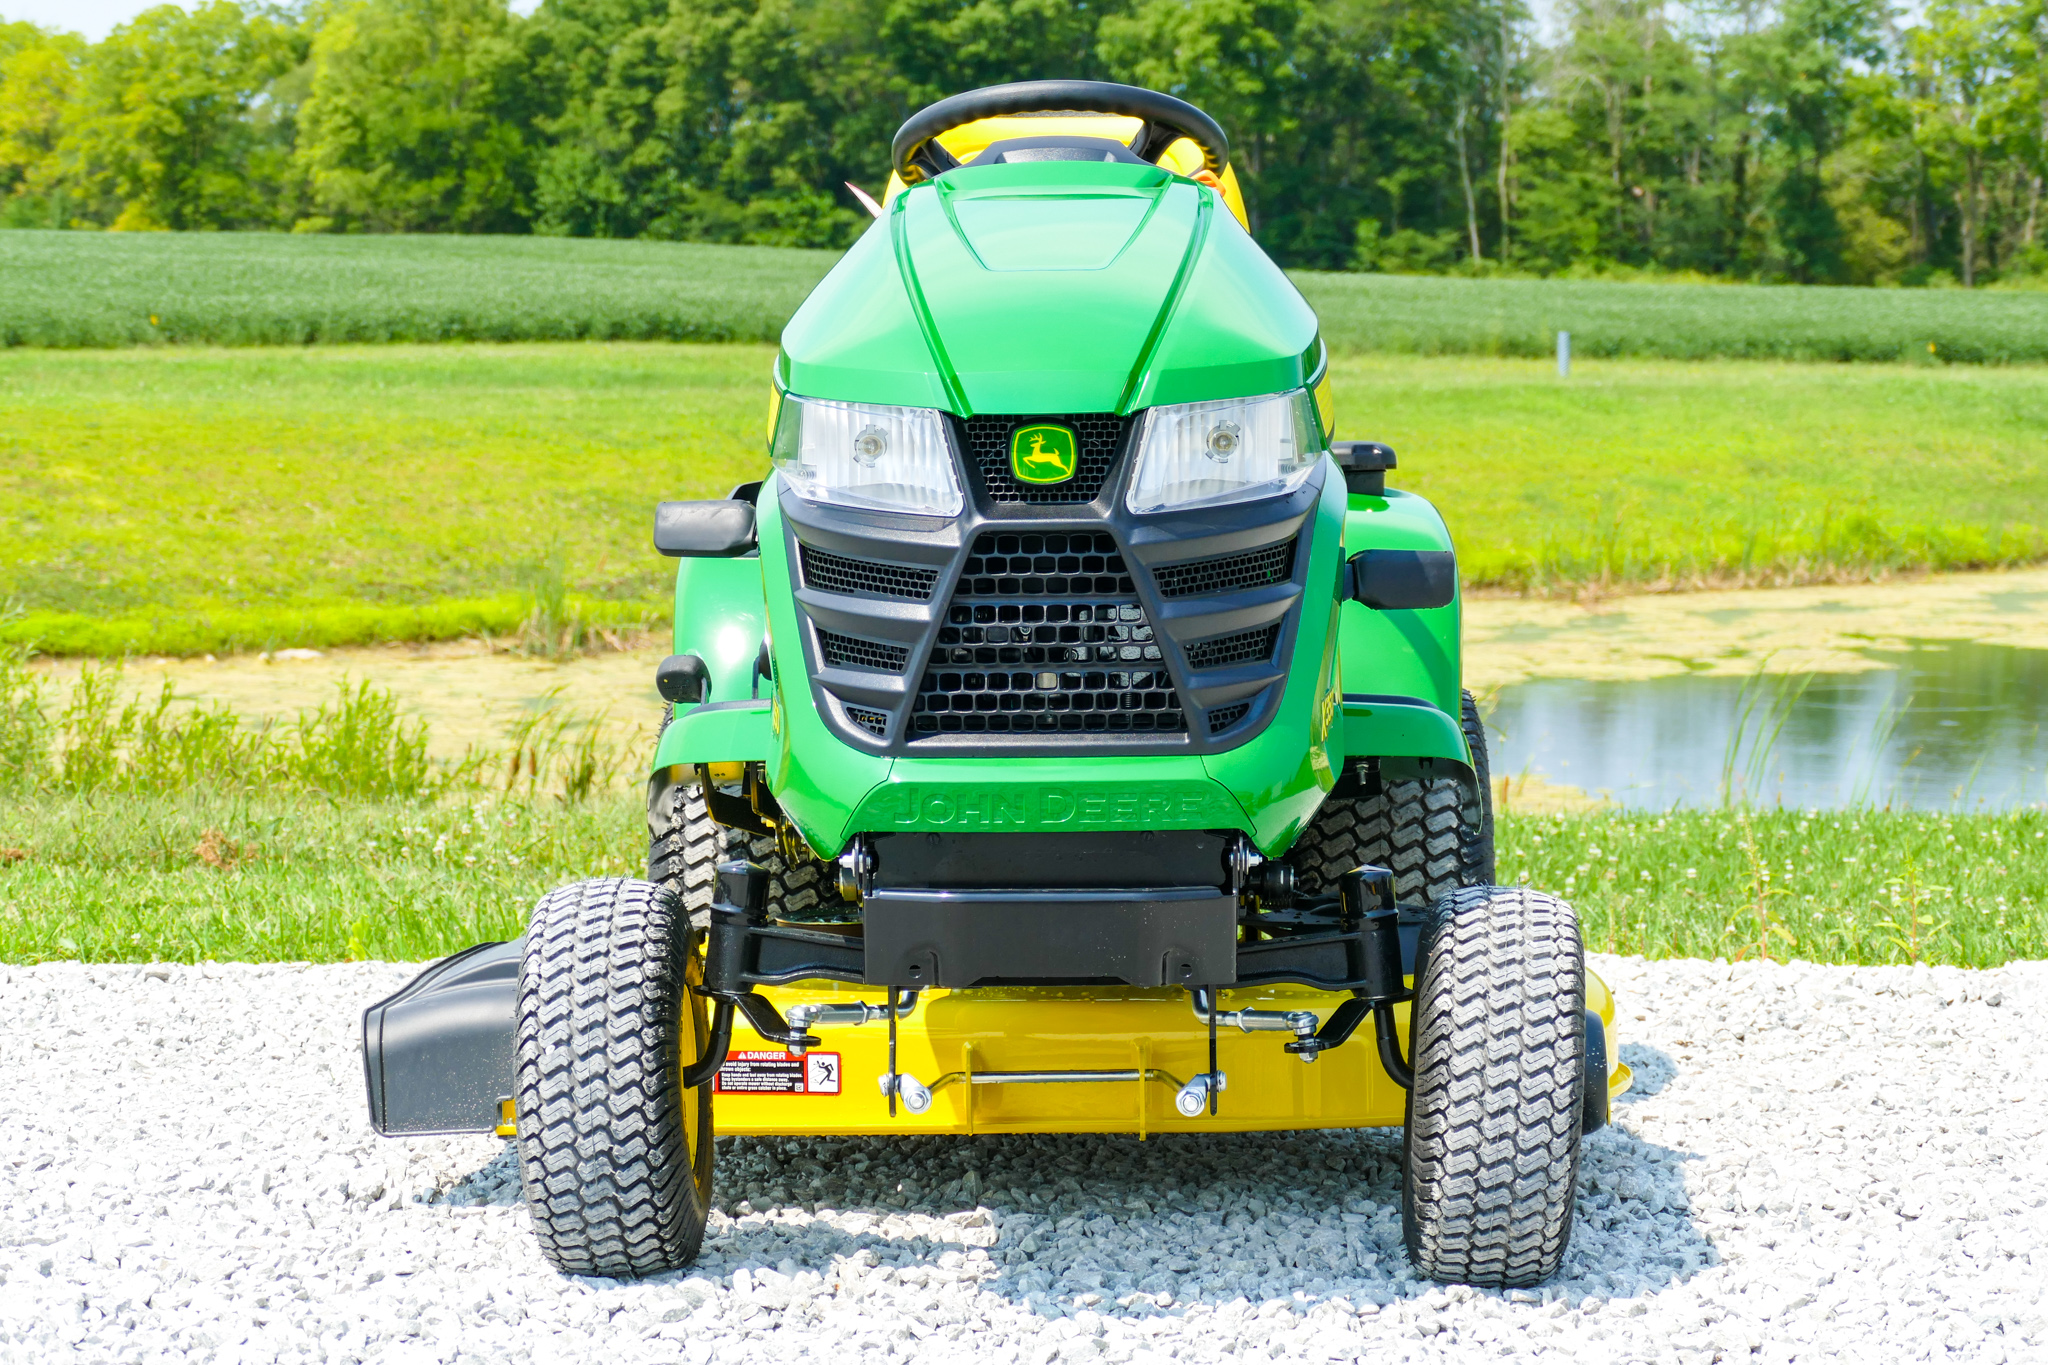 X350 Lawn Tractor with 42inch Deck Reynolds Farm Equipment